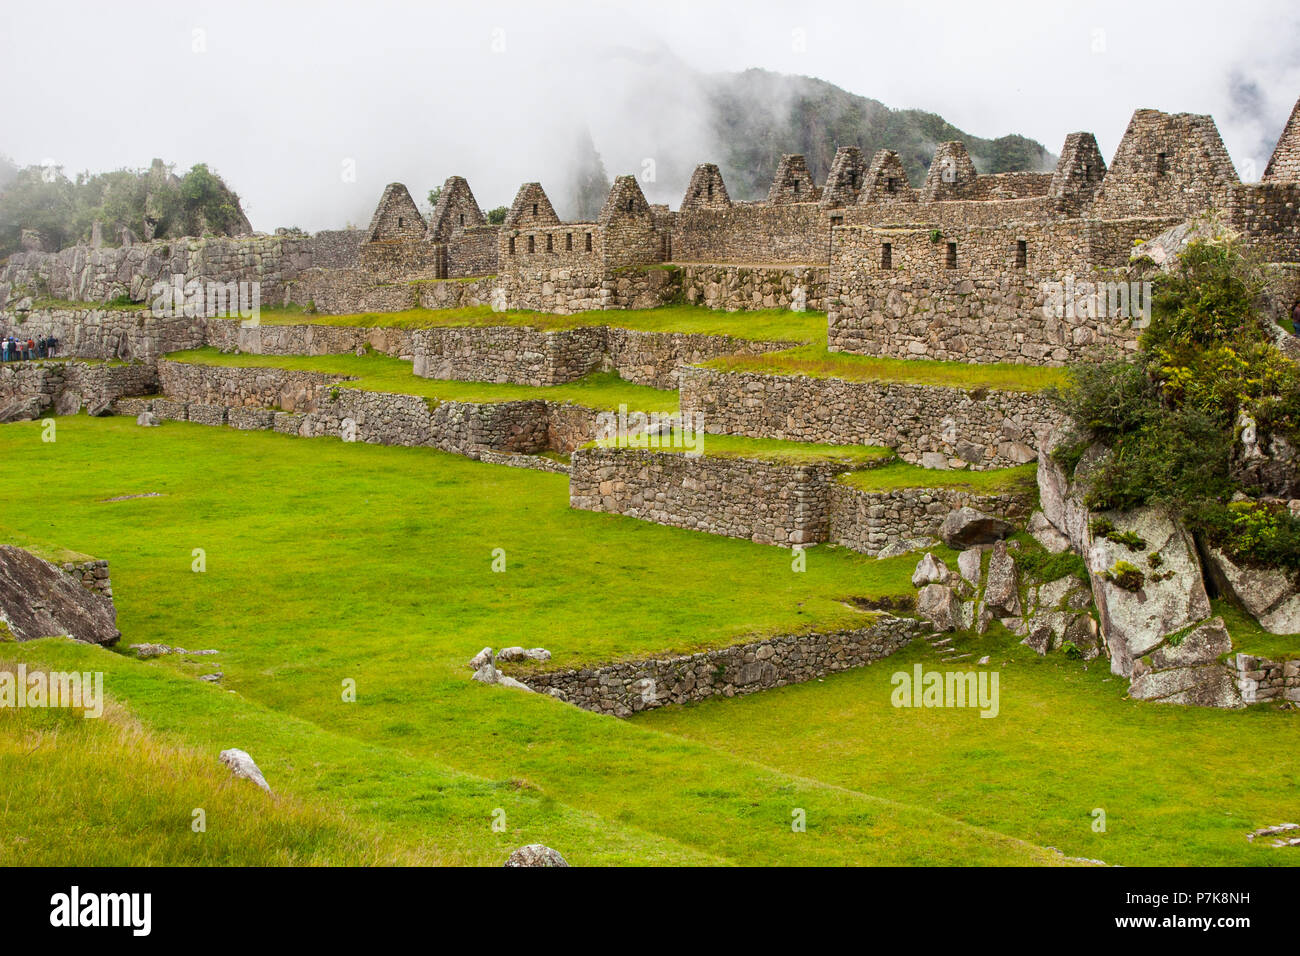 Rovine di Machu Picchu antica città perduta nelle Ande natura. Moutains nella nebbia. Il Perù. Sud America. N. persone. Foto Stock